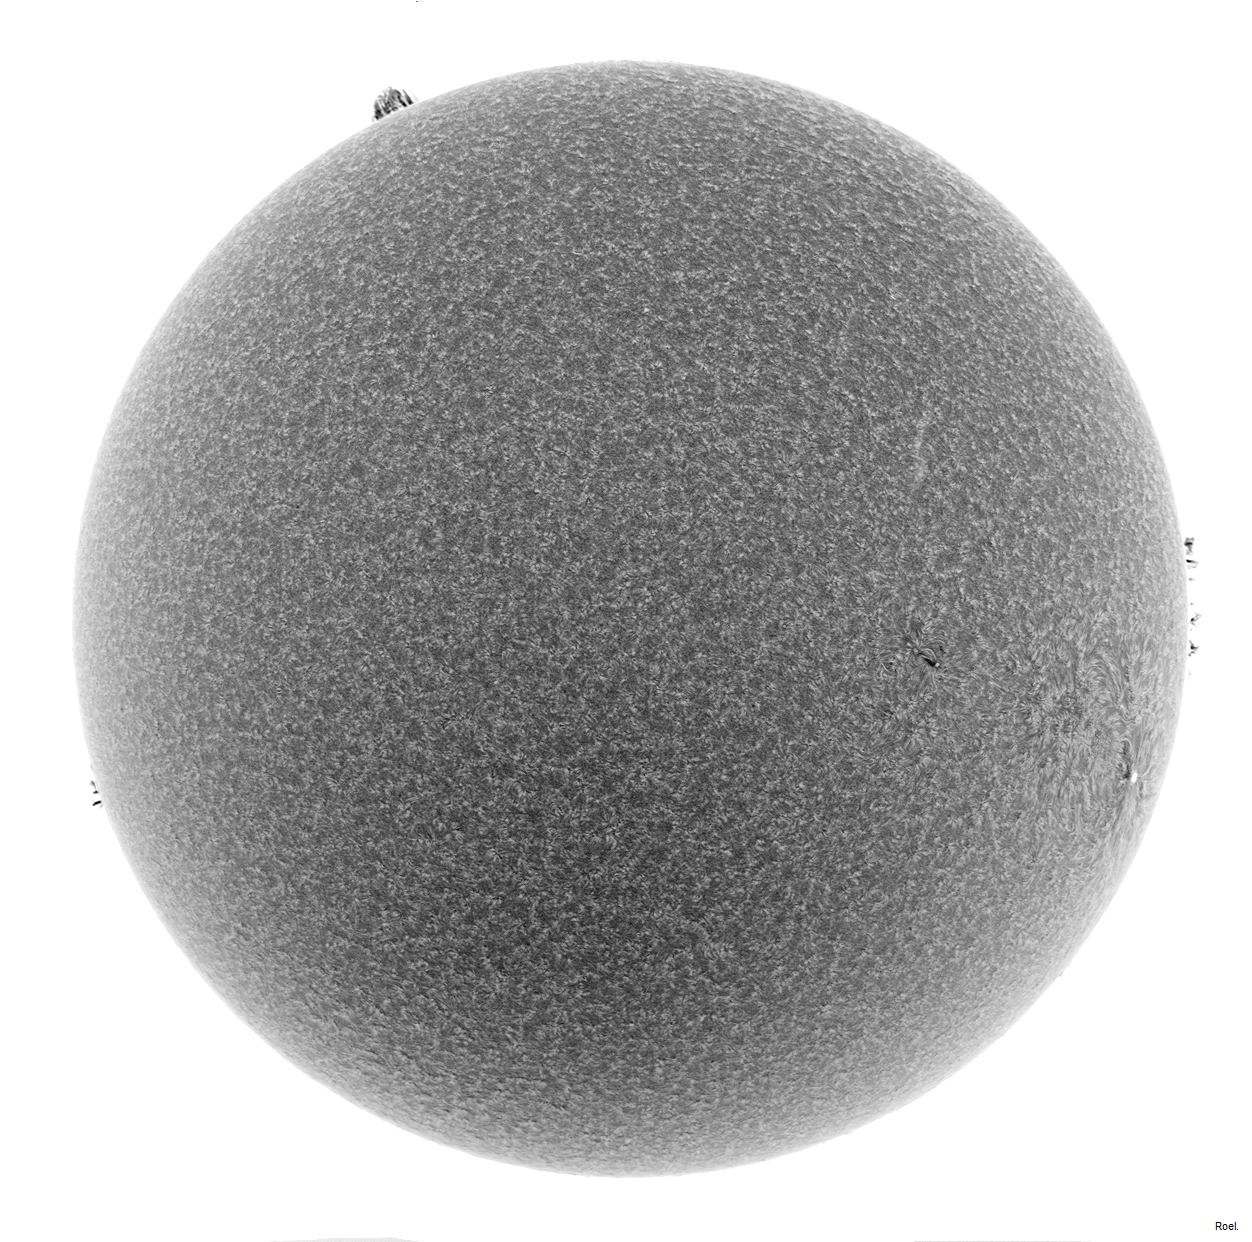 Sol del 18 de abril del 2019-Solarmax 90-DS-BF30-1neg.jpg